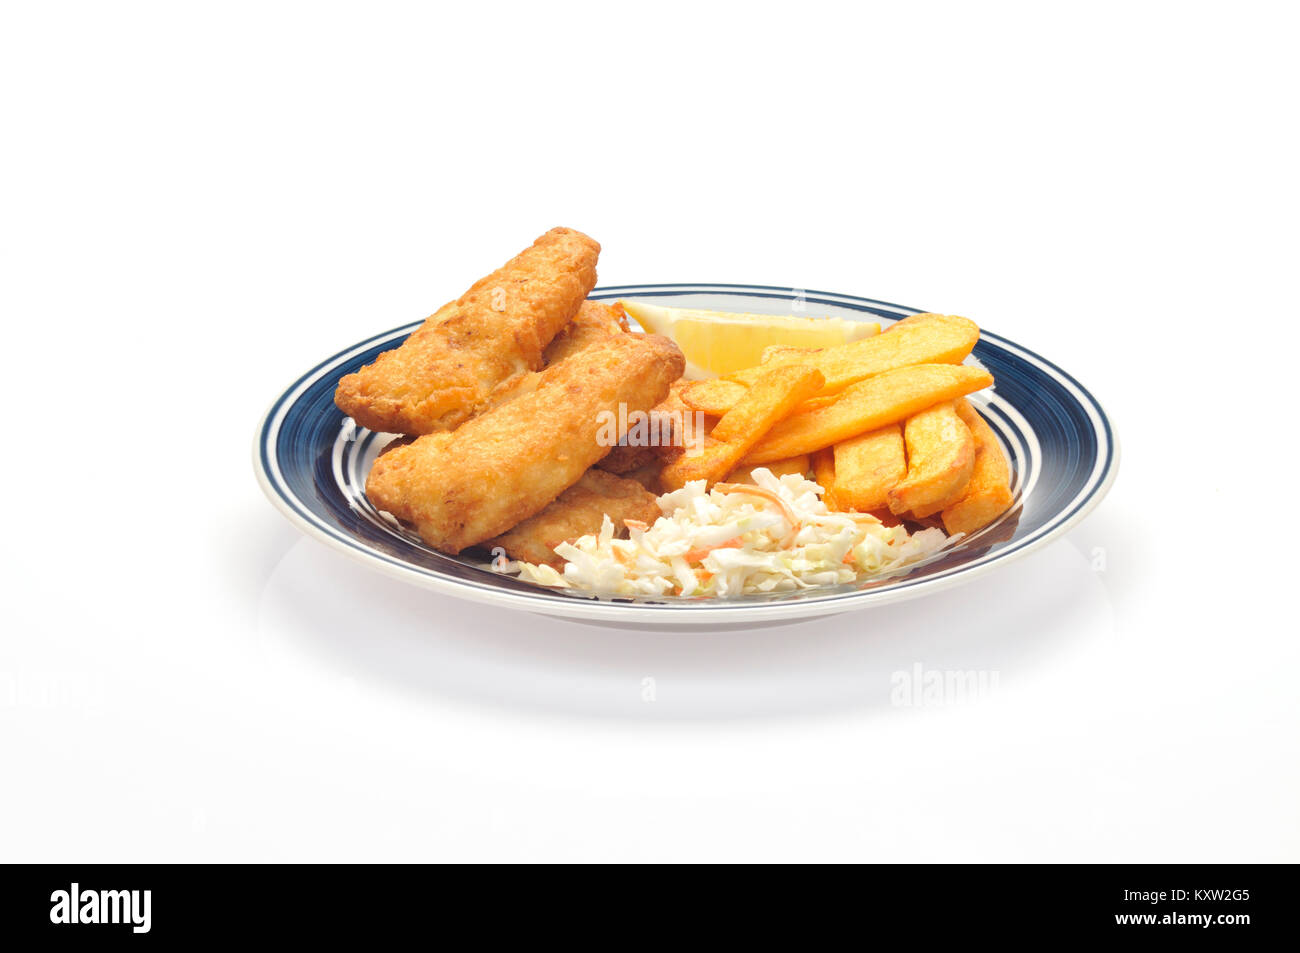 Le poisson frit et frites avec une pointe de citron et de choux sur la plaque bleue et blanche sur fond blanc coupé Banque D'Images